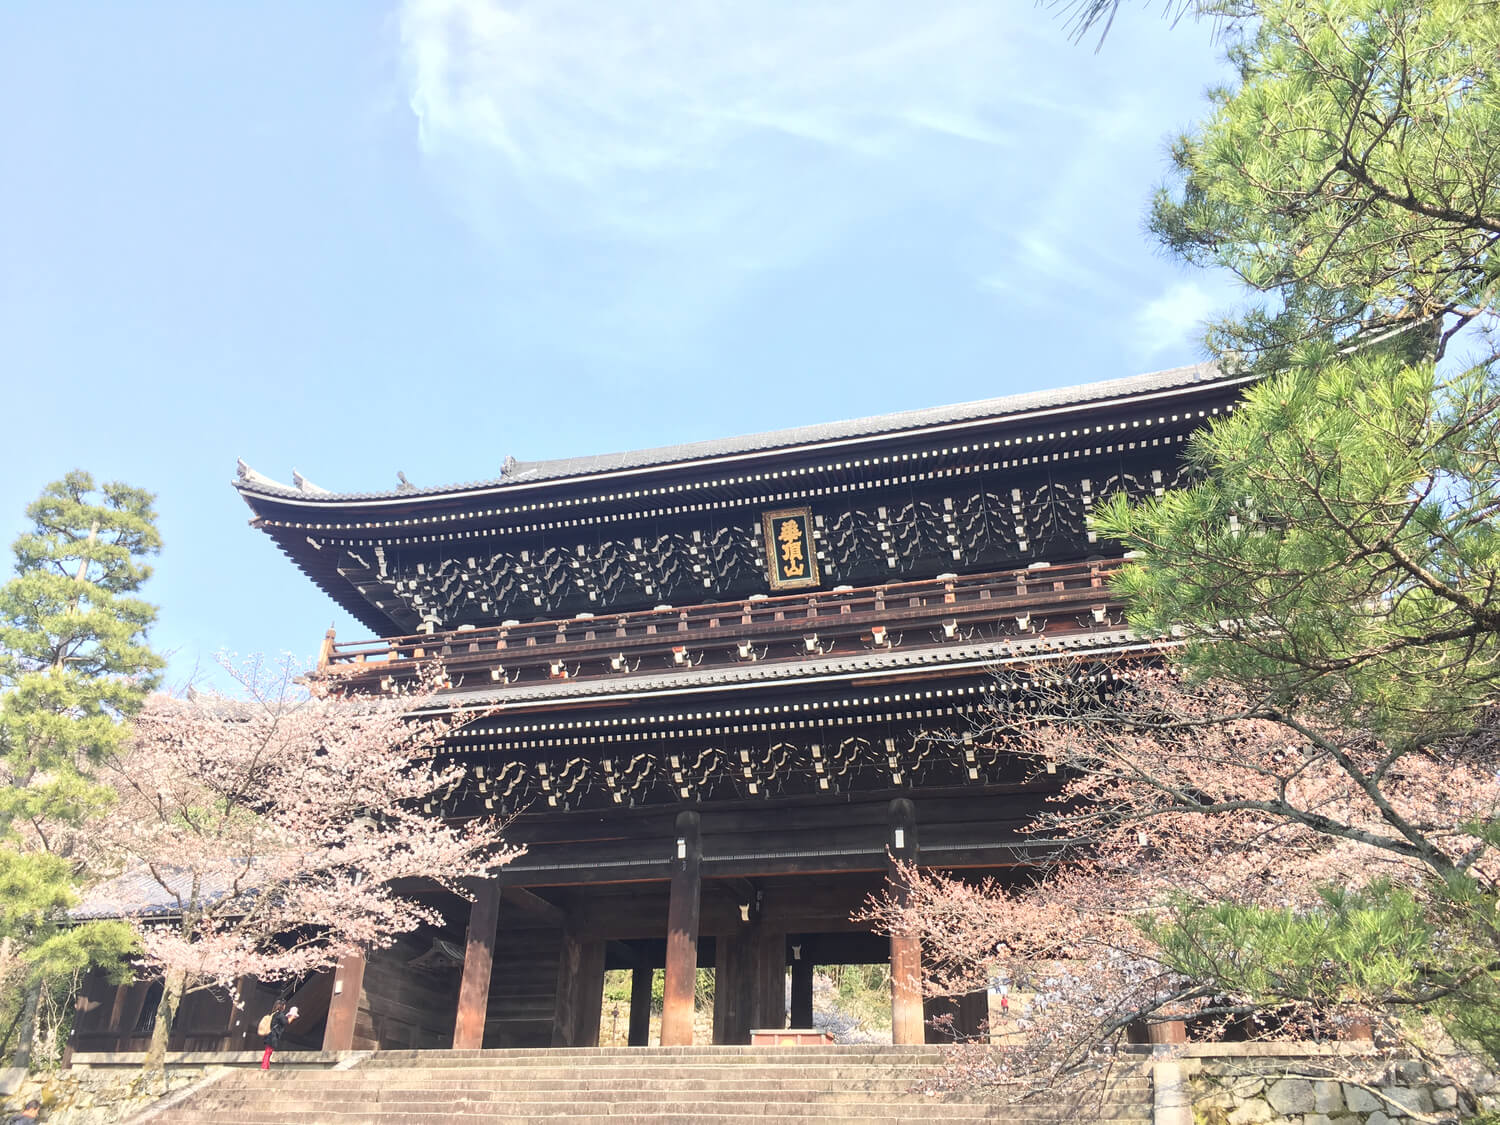 京都観光 ＞ 京都市・祇園・嵐山観光 ＞ 心清められる法然上人の教え…知恩院で人生の迷いを晴らす